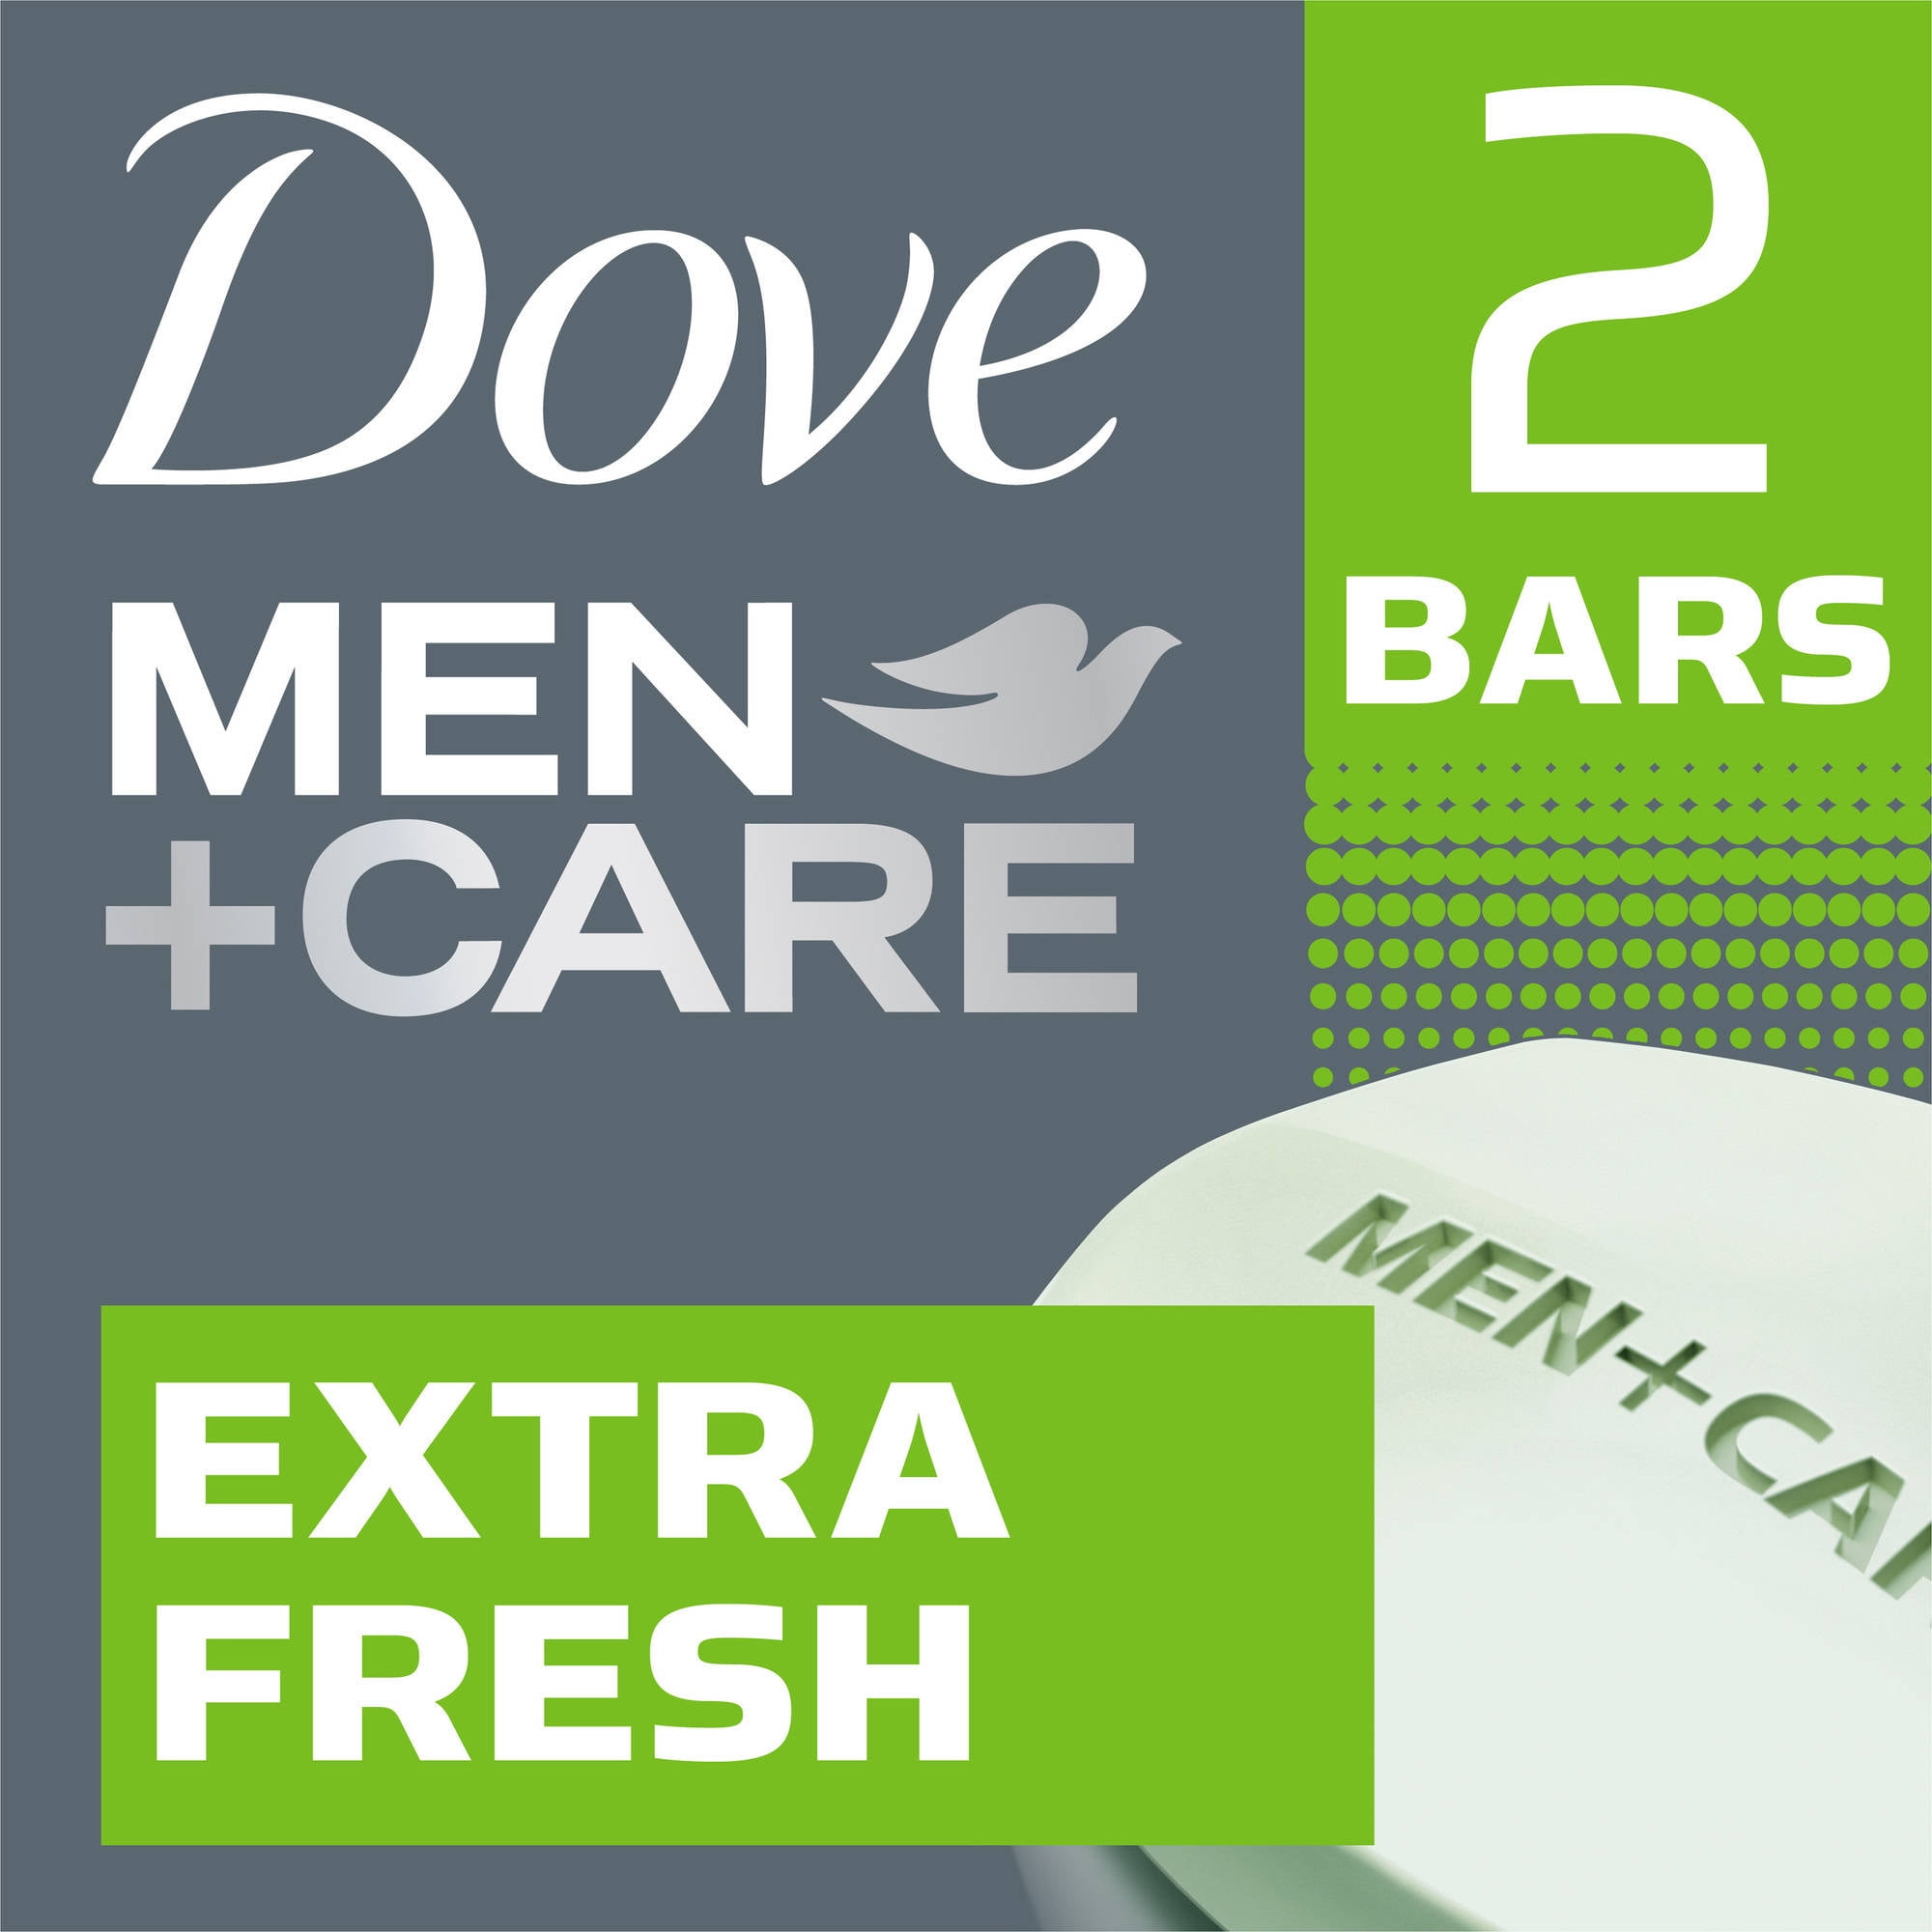 Dove Men+Care Extra Fresh Body and Face Bar, 4 oz, 2 Bar